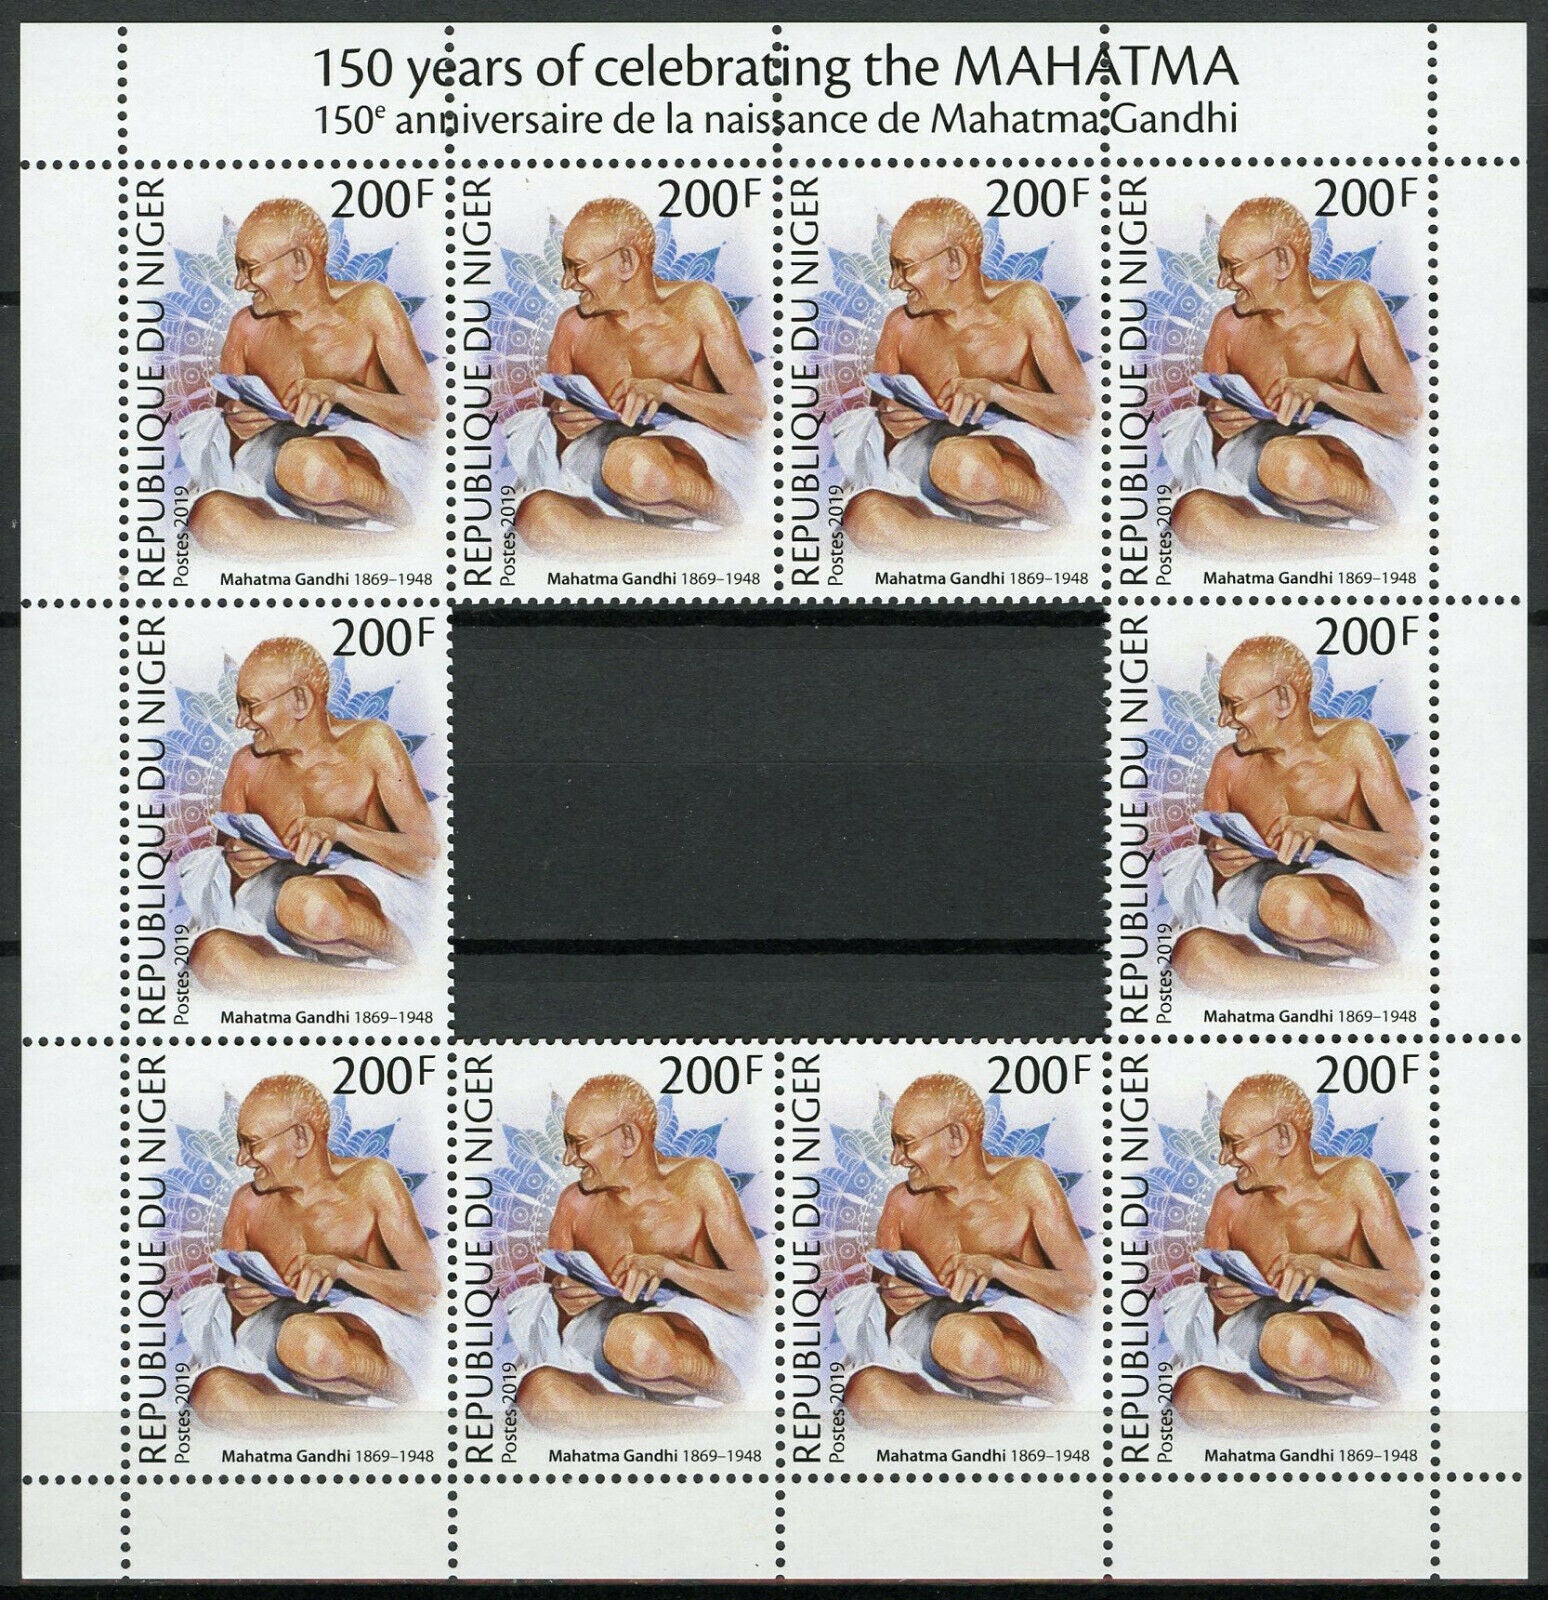 Niger Mahatma Gandhi Stamps 2019 MNH Famous People Historical Figures 10v M/S